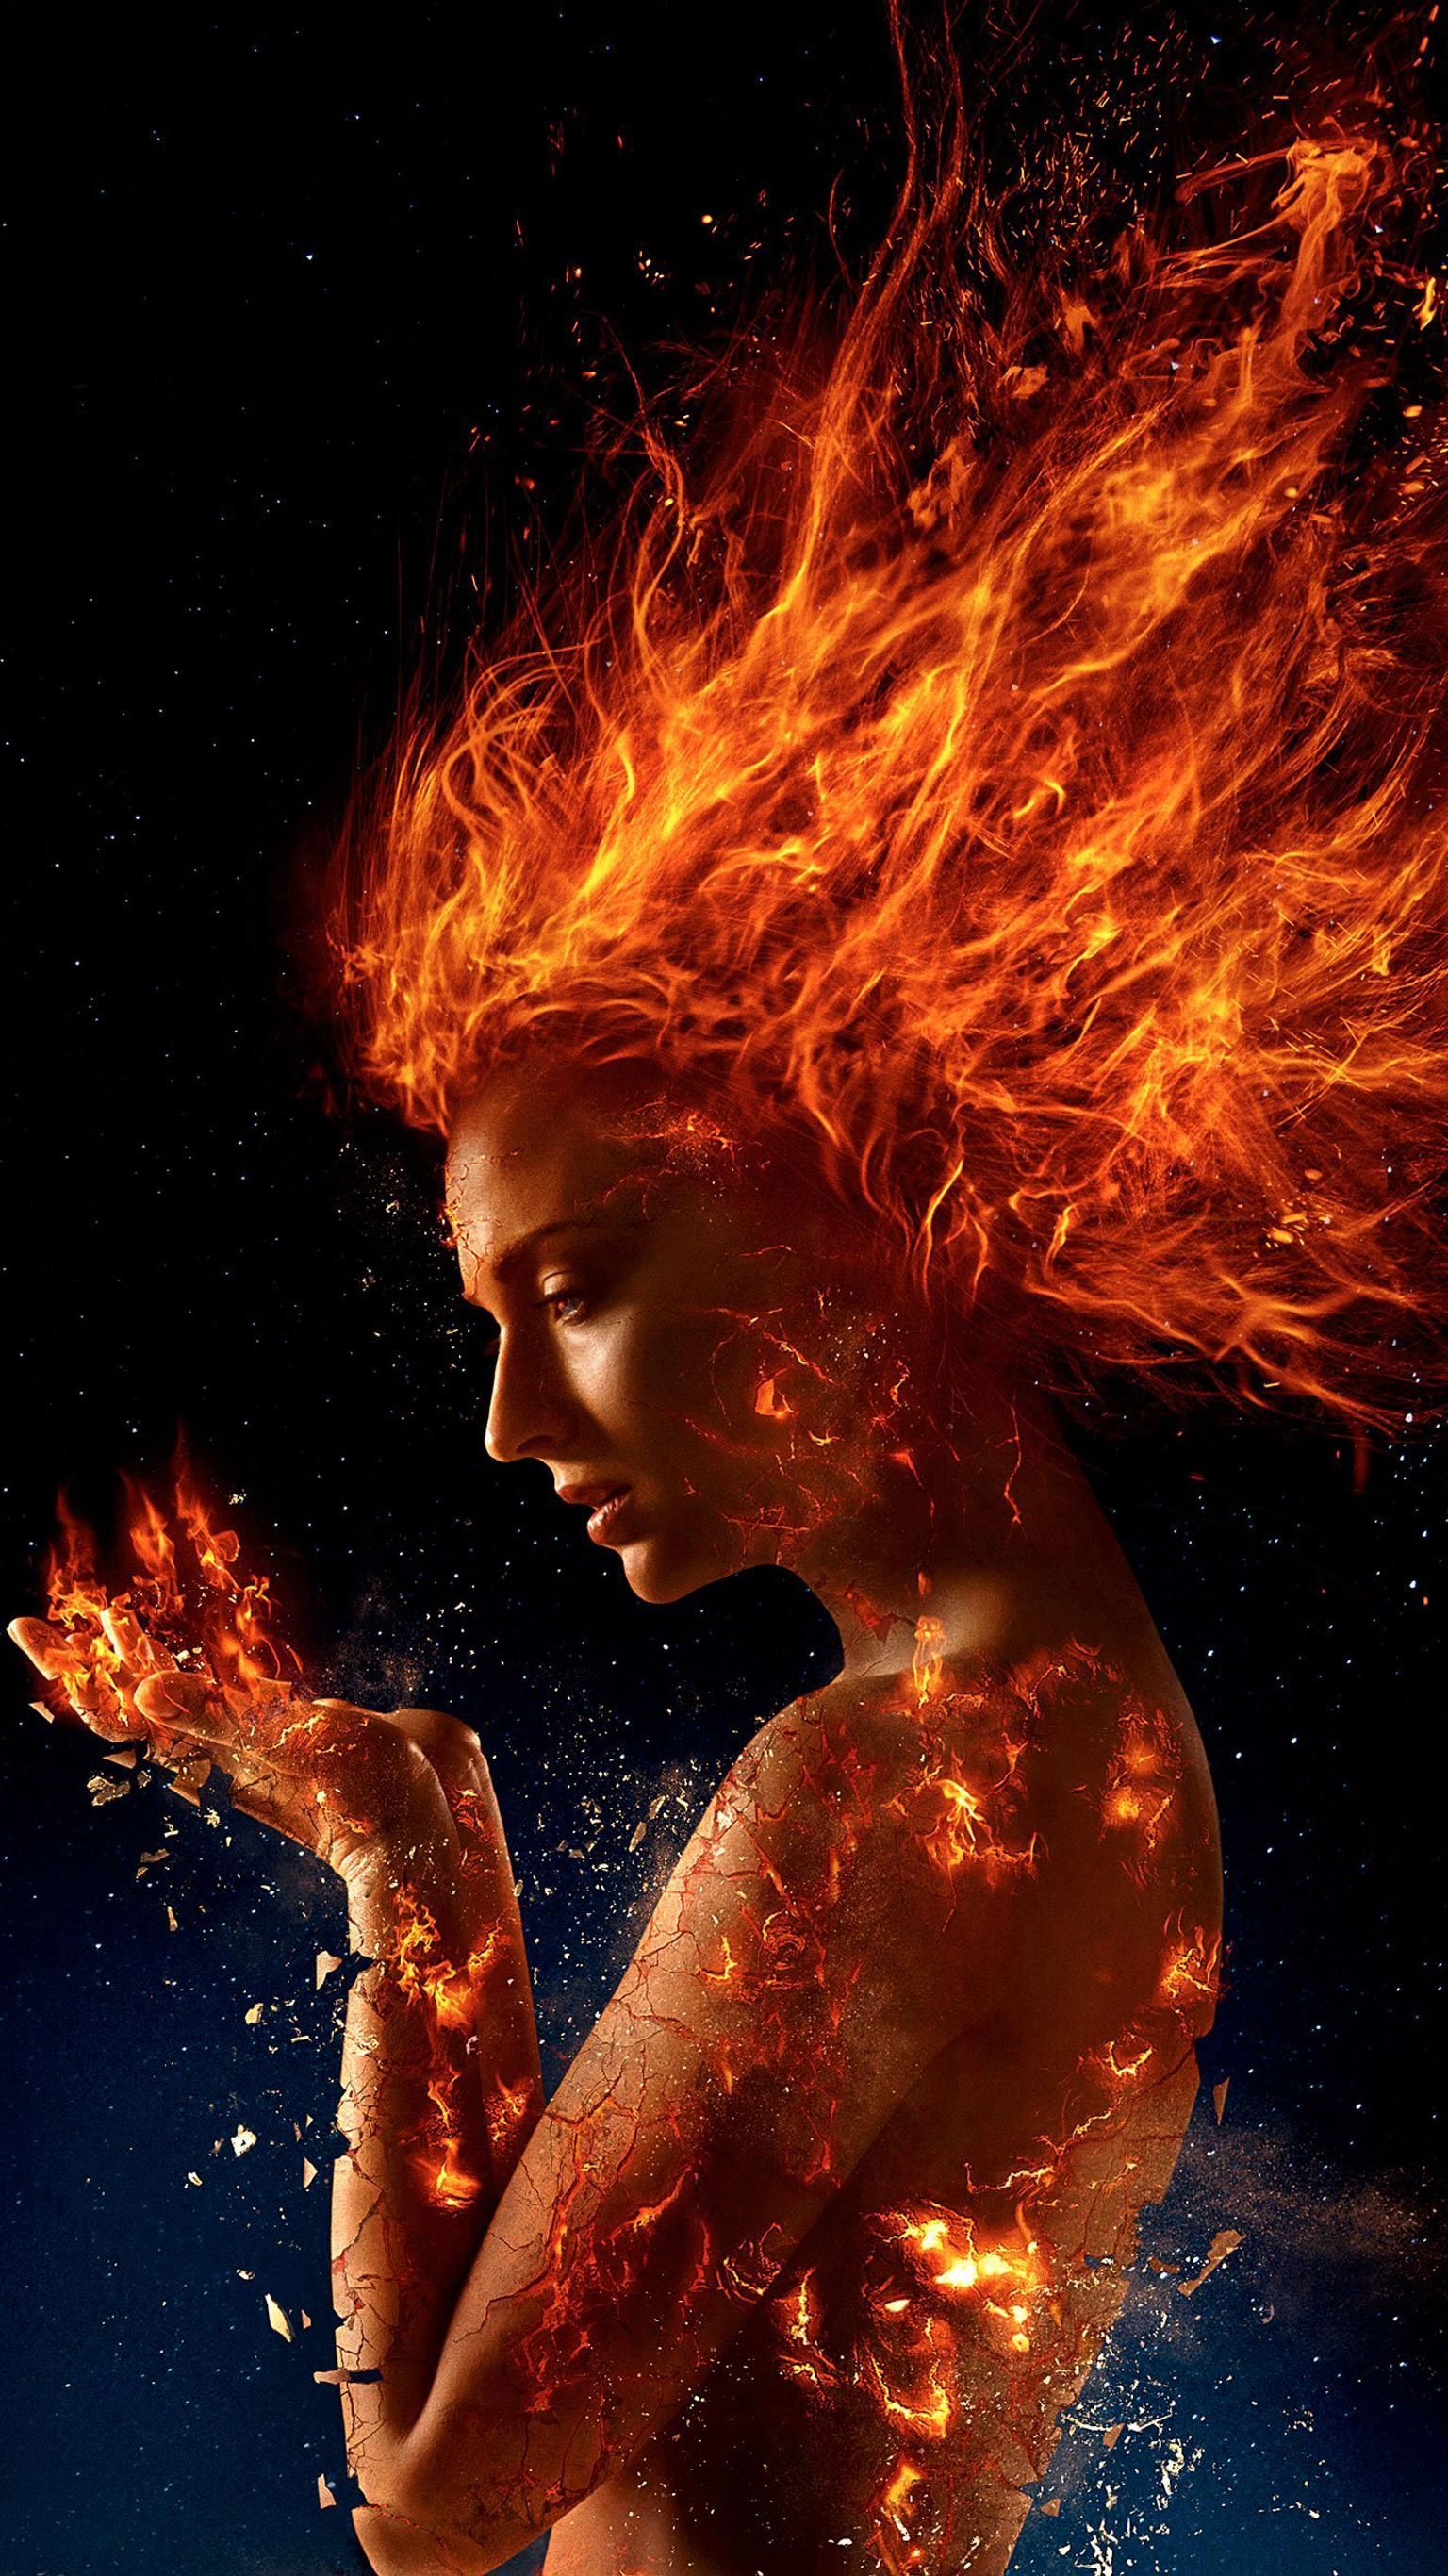 X-Men Dark Phoenix 2019 Movie New Poster Wallpapers